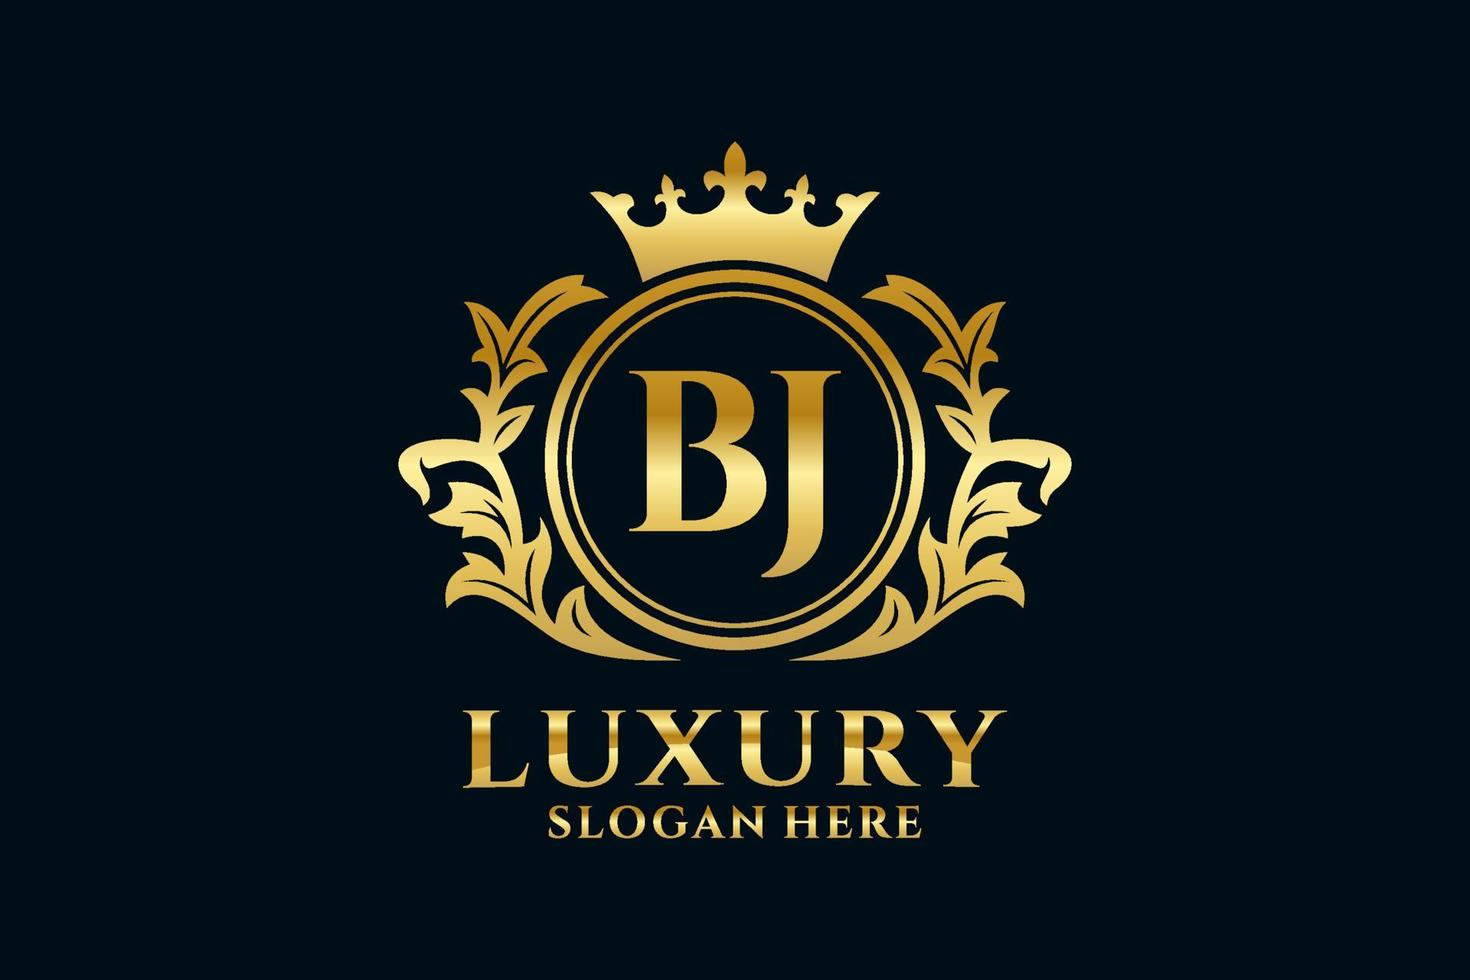 modèle initial de logo de luxe royal de lettre bj dans l'art vectoriel pour des projets de marque luxueux et d'autres illustrations vectorielles.